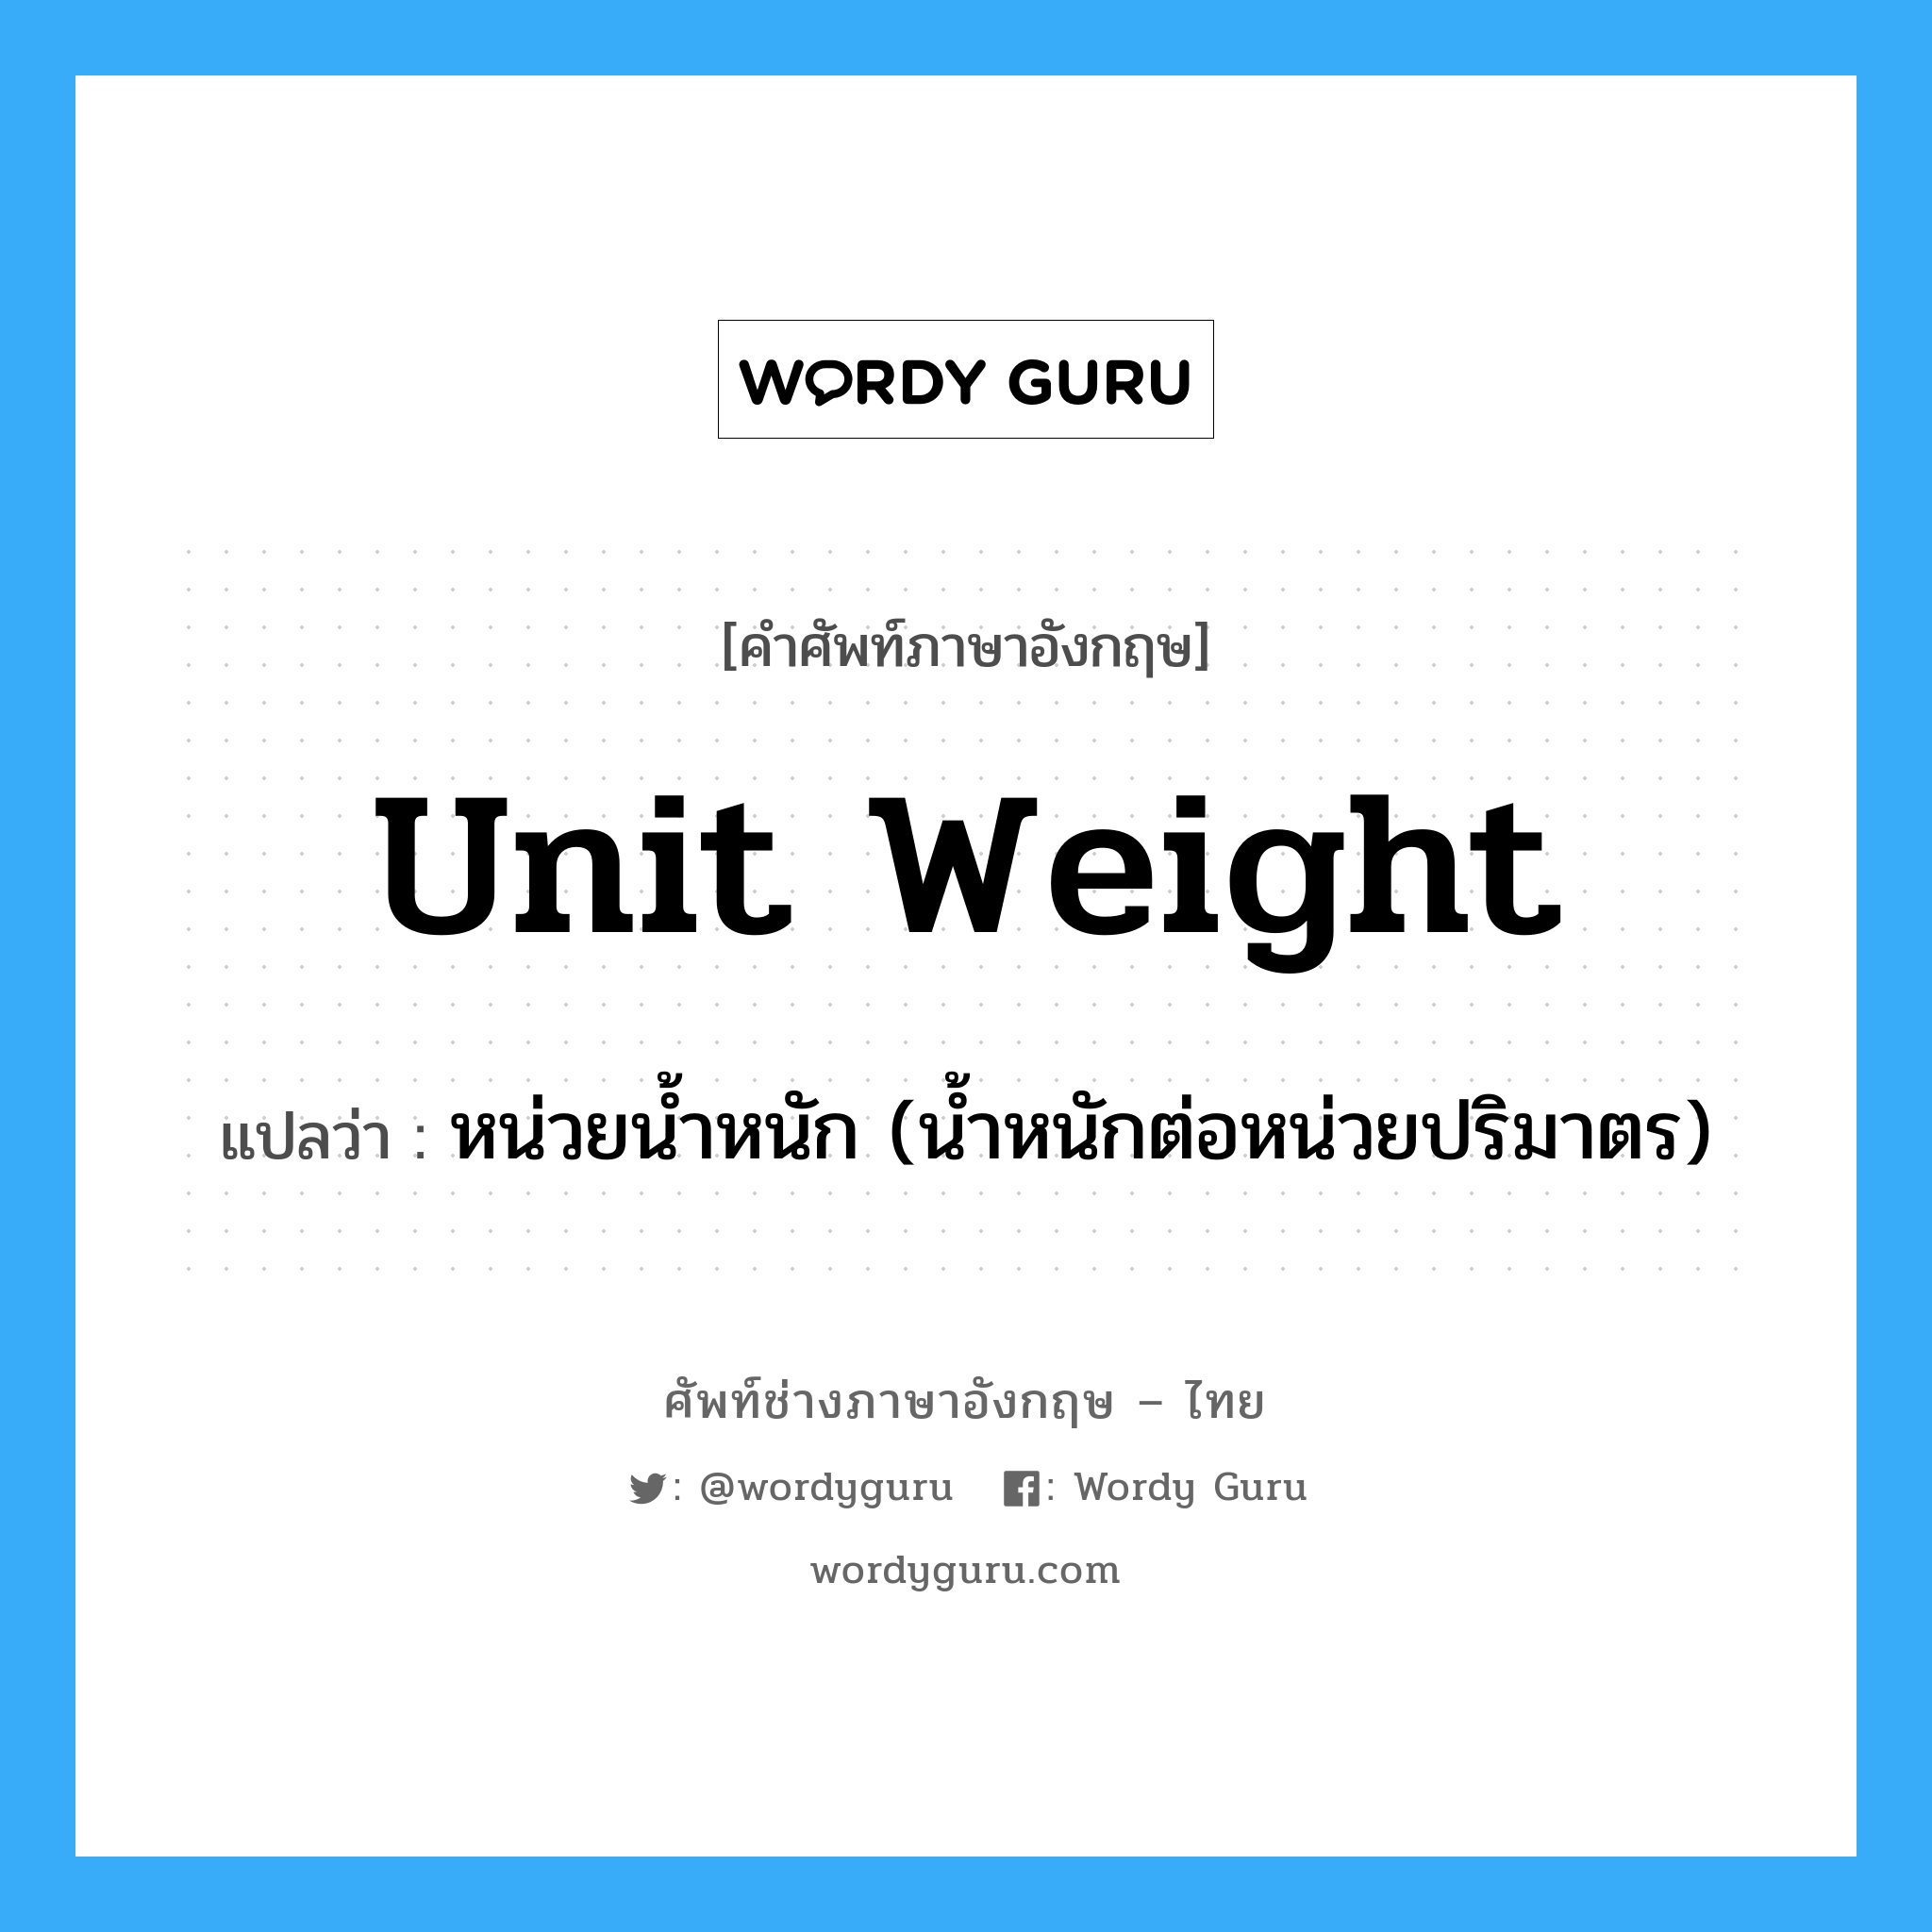 unit weight แปลว่า?, คำศัพท์ช่างภาษาอังกฤษ - ไทย unit weight คำศัพท์ภาษาอังกฤษ unit weight แปลว่า หน่วยน้ำหนัก (น้ำหนักต่อหน่วยปริมาตร)